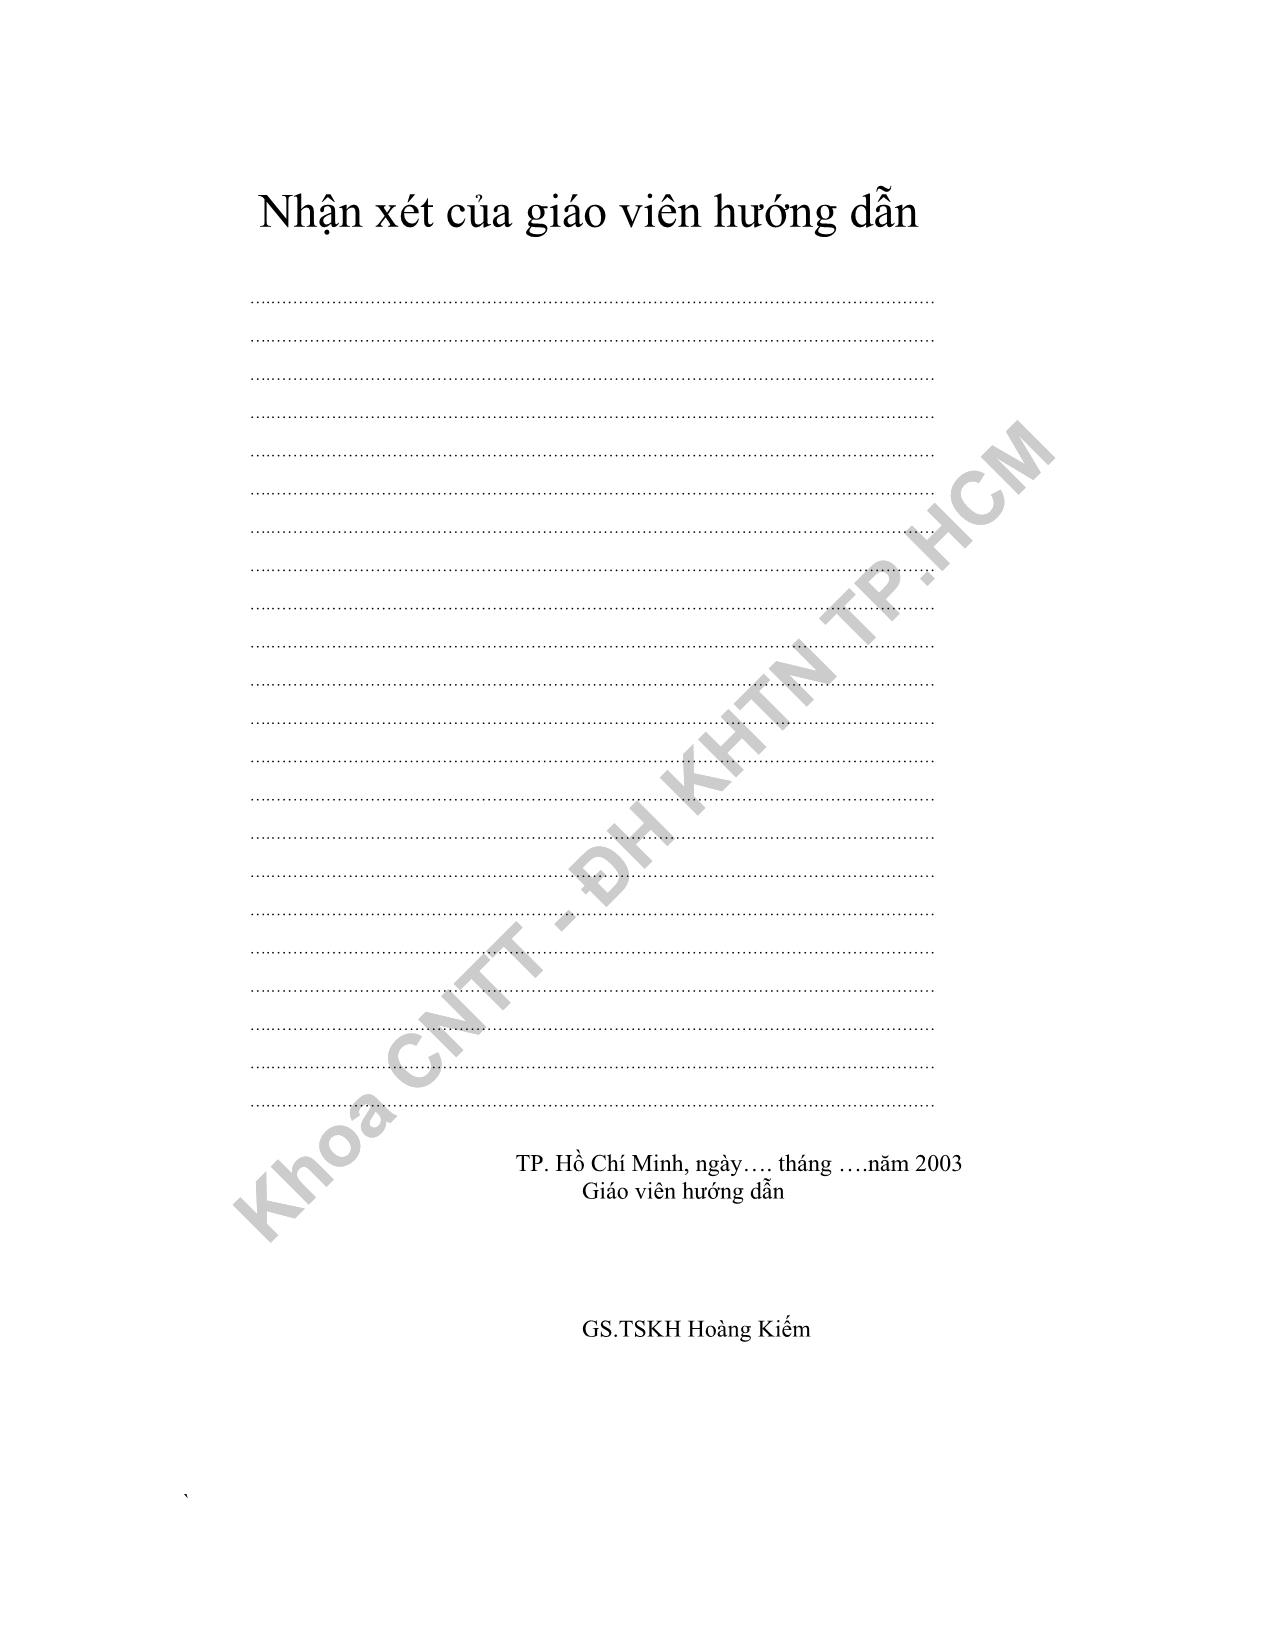 Luận văn Nghiên cứu và cài đặt bộ gán nhãn từ loại cho song ngữ Anh - Việt trang 2